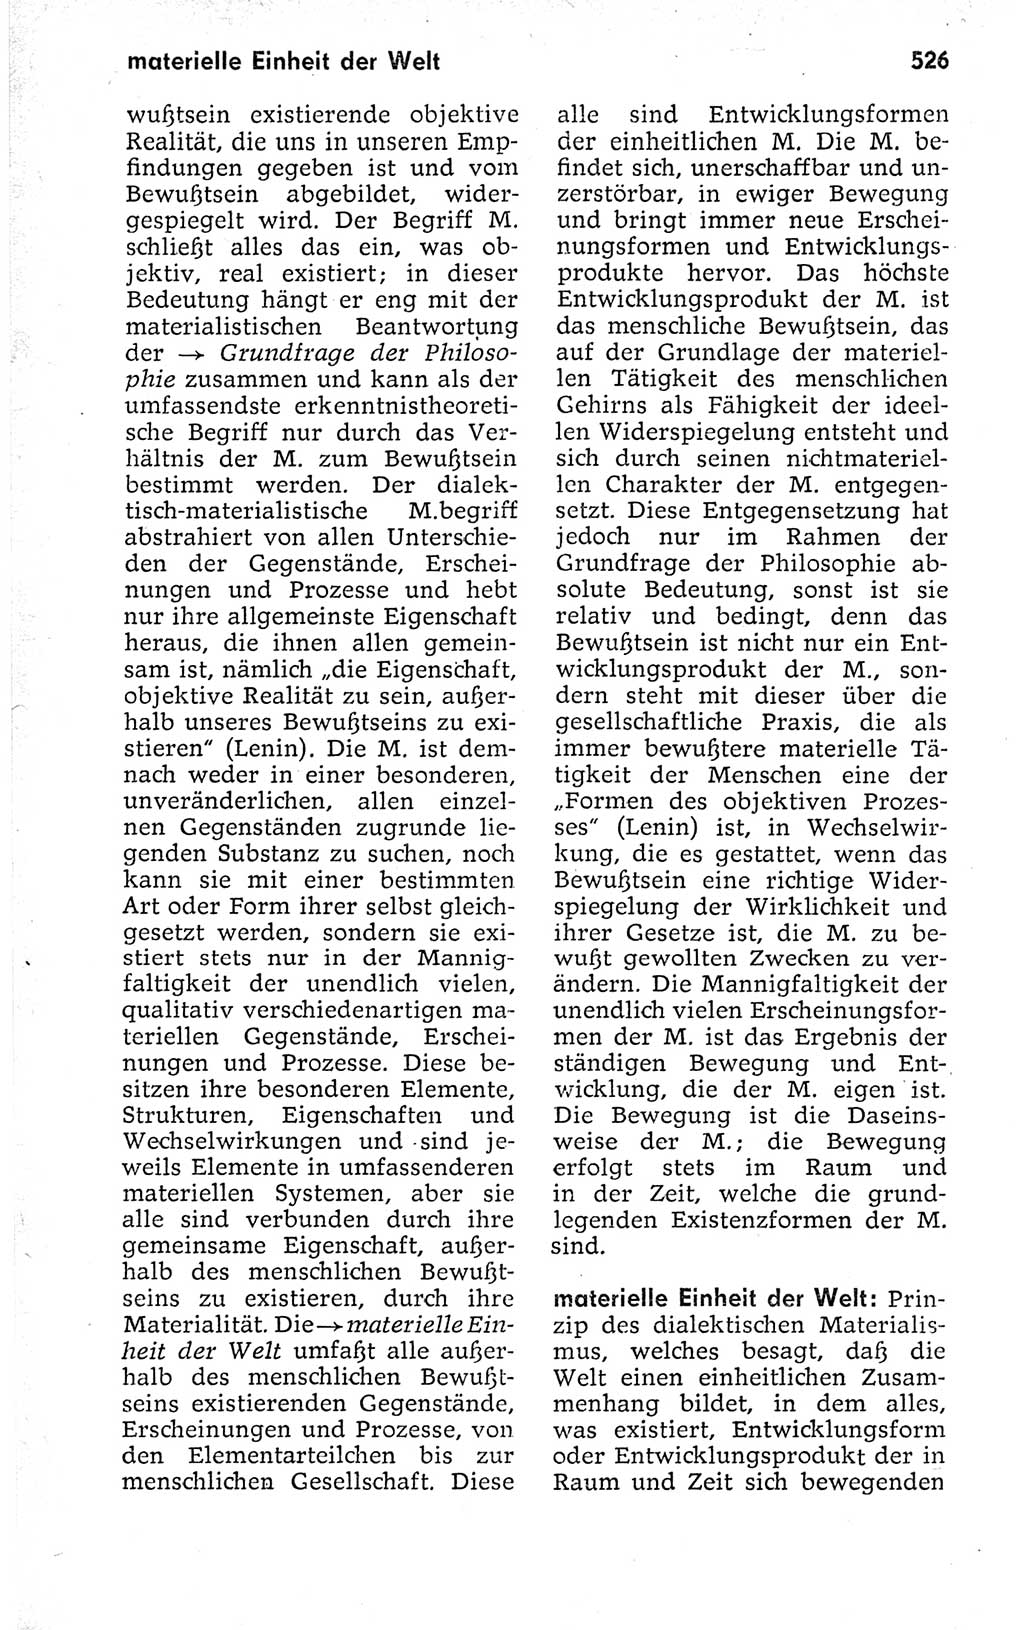 Kleines politisches Wörterbuch [Deutsche Demokratische Republik (DDR)] 1973, Seite 526 (Kl. pol. Wb. DDR 1973, S. 526)